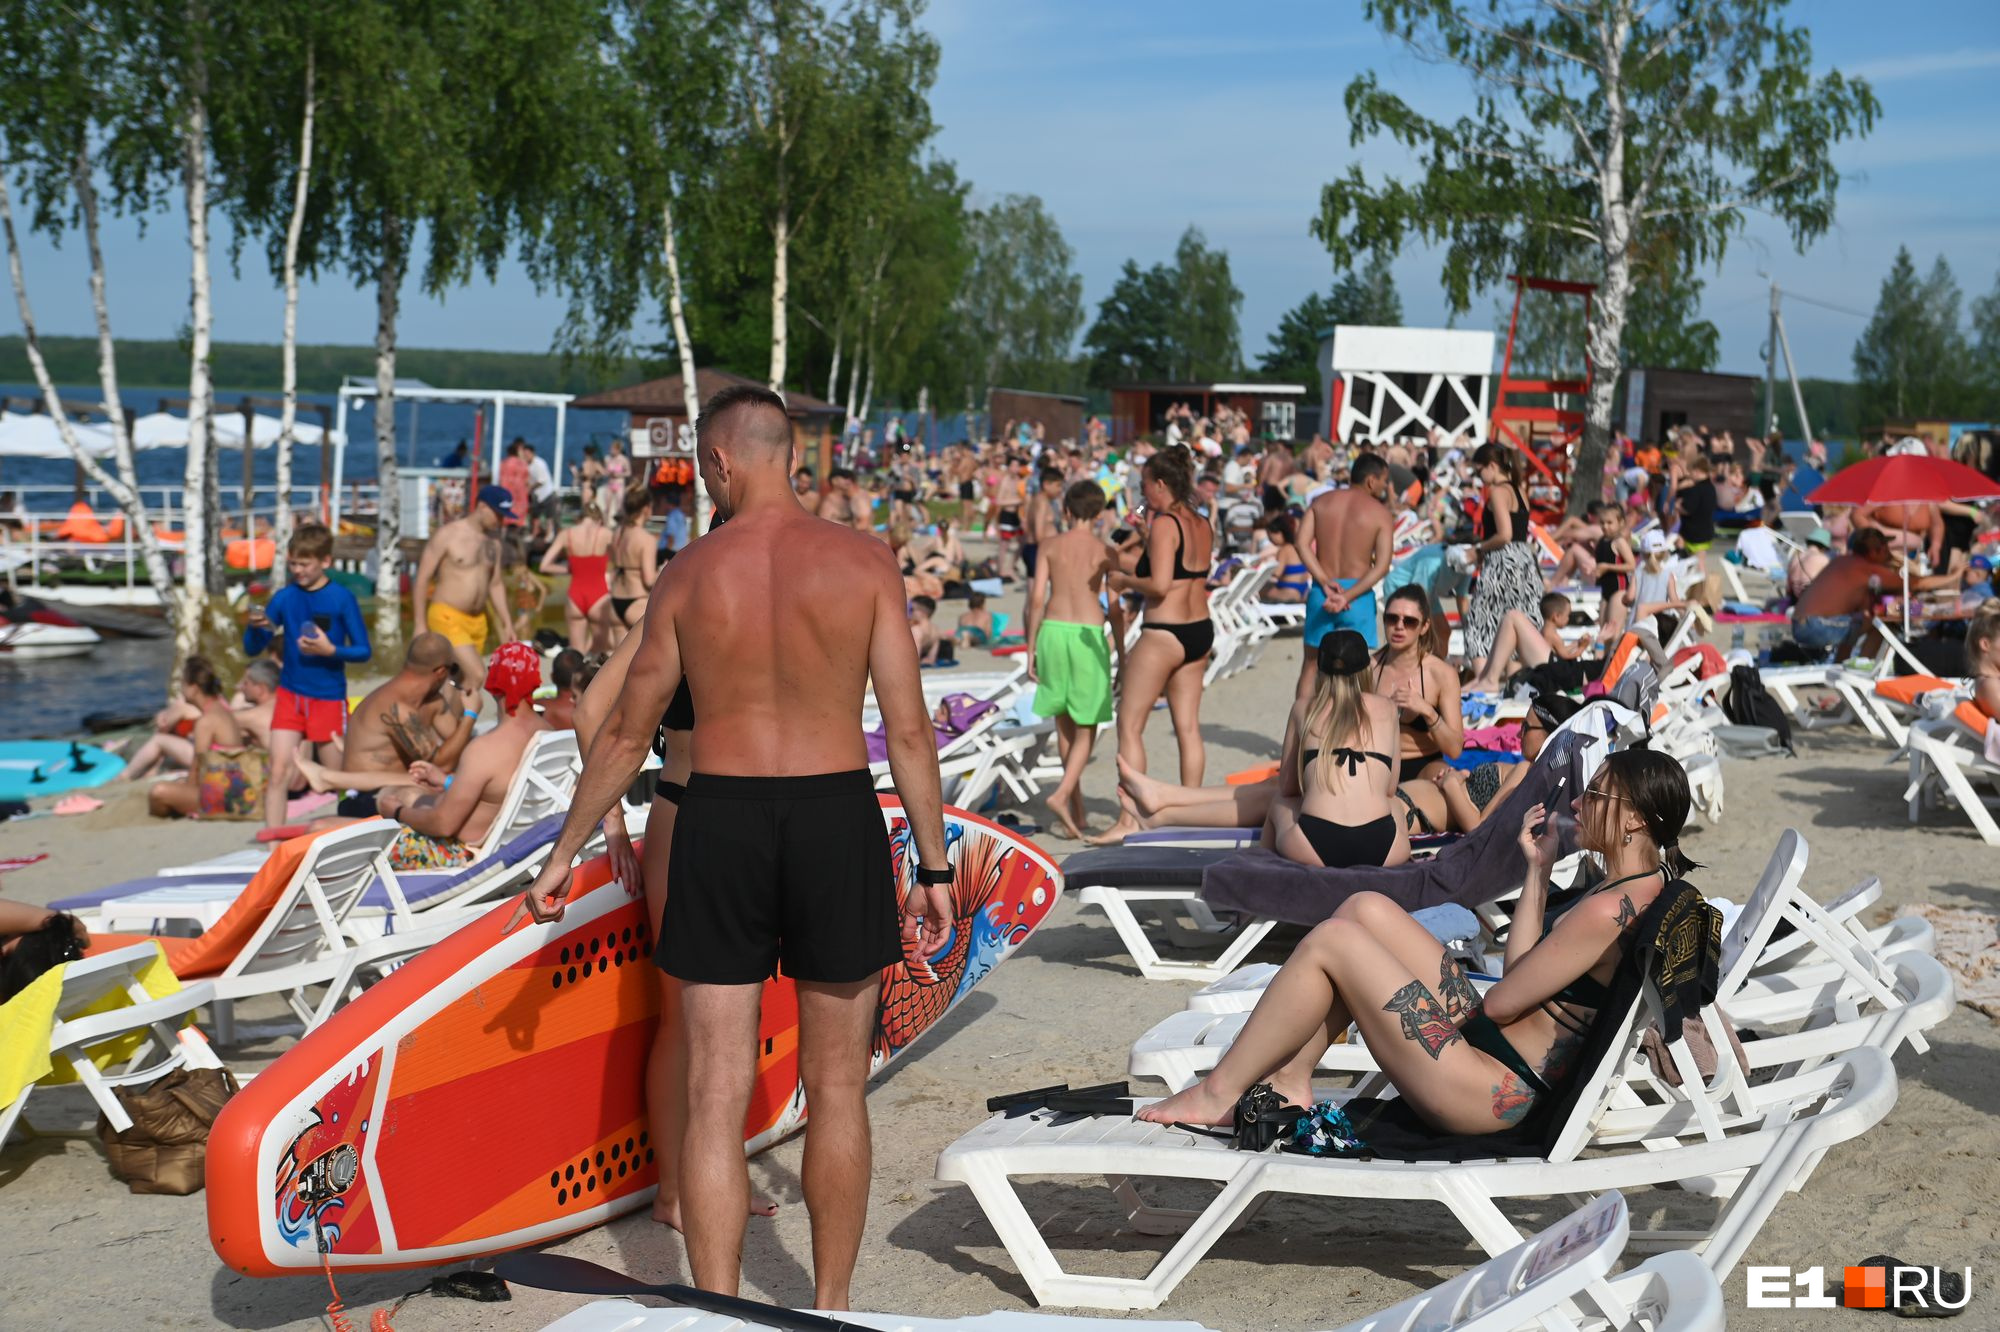 Тысячи екатеринбуржцев заполнили пляж вблизи города: фото, от которых становится жарко